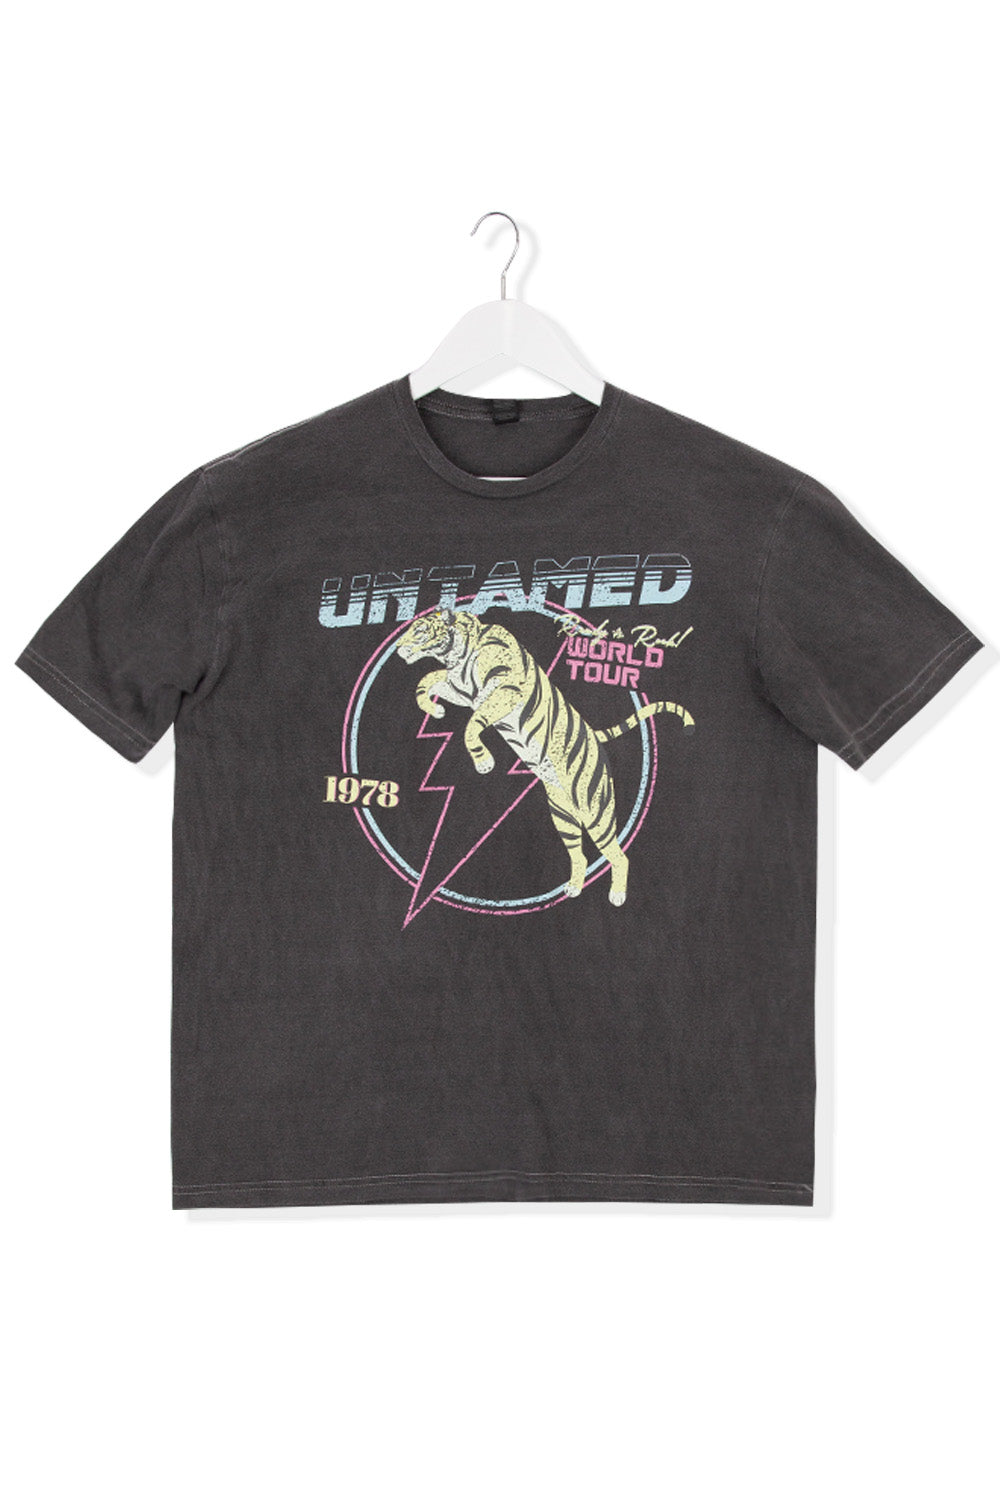 Untamed Tiger Distressed Oversized Acid Wash T-Shirt (Custom Pack)